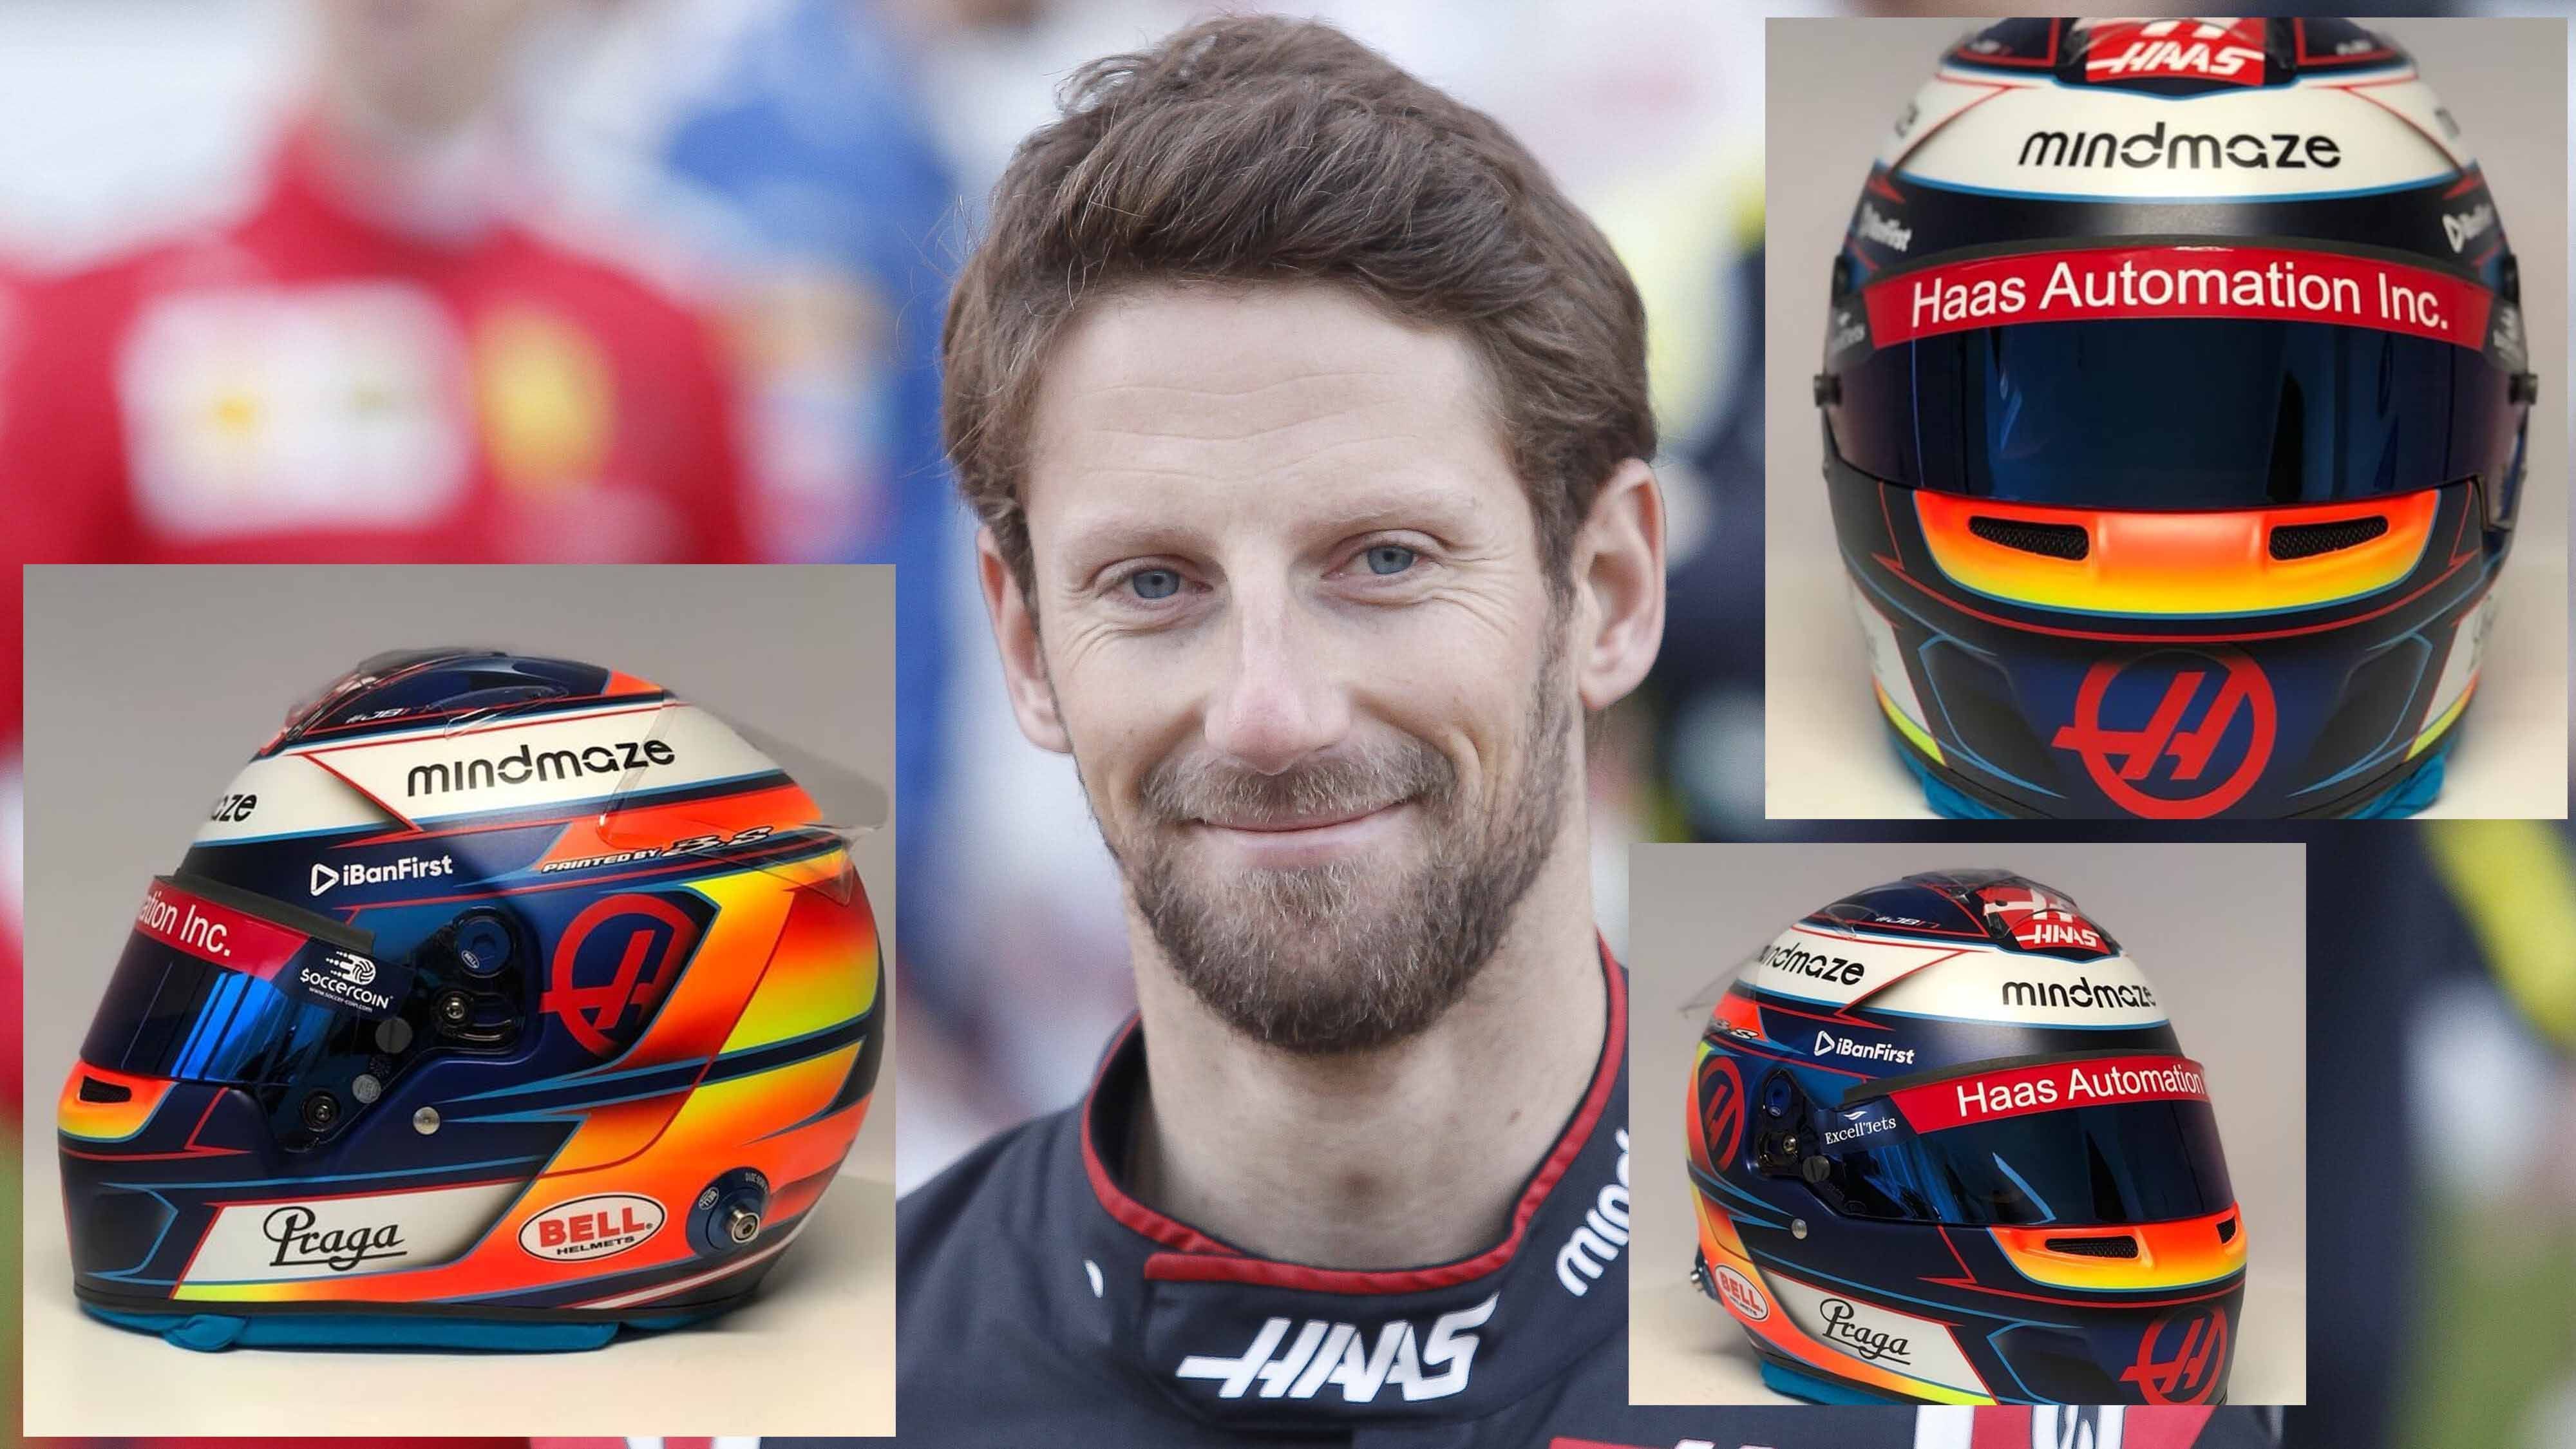 
                <strong>Romain Grosjean (Haas F1 Team)</strong><br>
                Besonders farbenfroh ist das Design des Helmes von Romain Grosjean. Während die Vorderseite besonders von Blau dominiert wird, sticht auf der Rückseite des Helmes ein gelb-oranger Ton heraus.
              